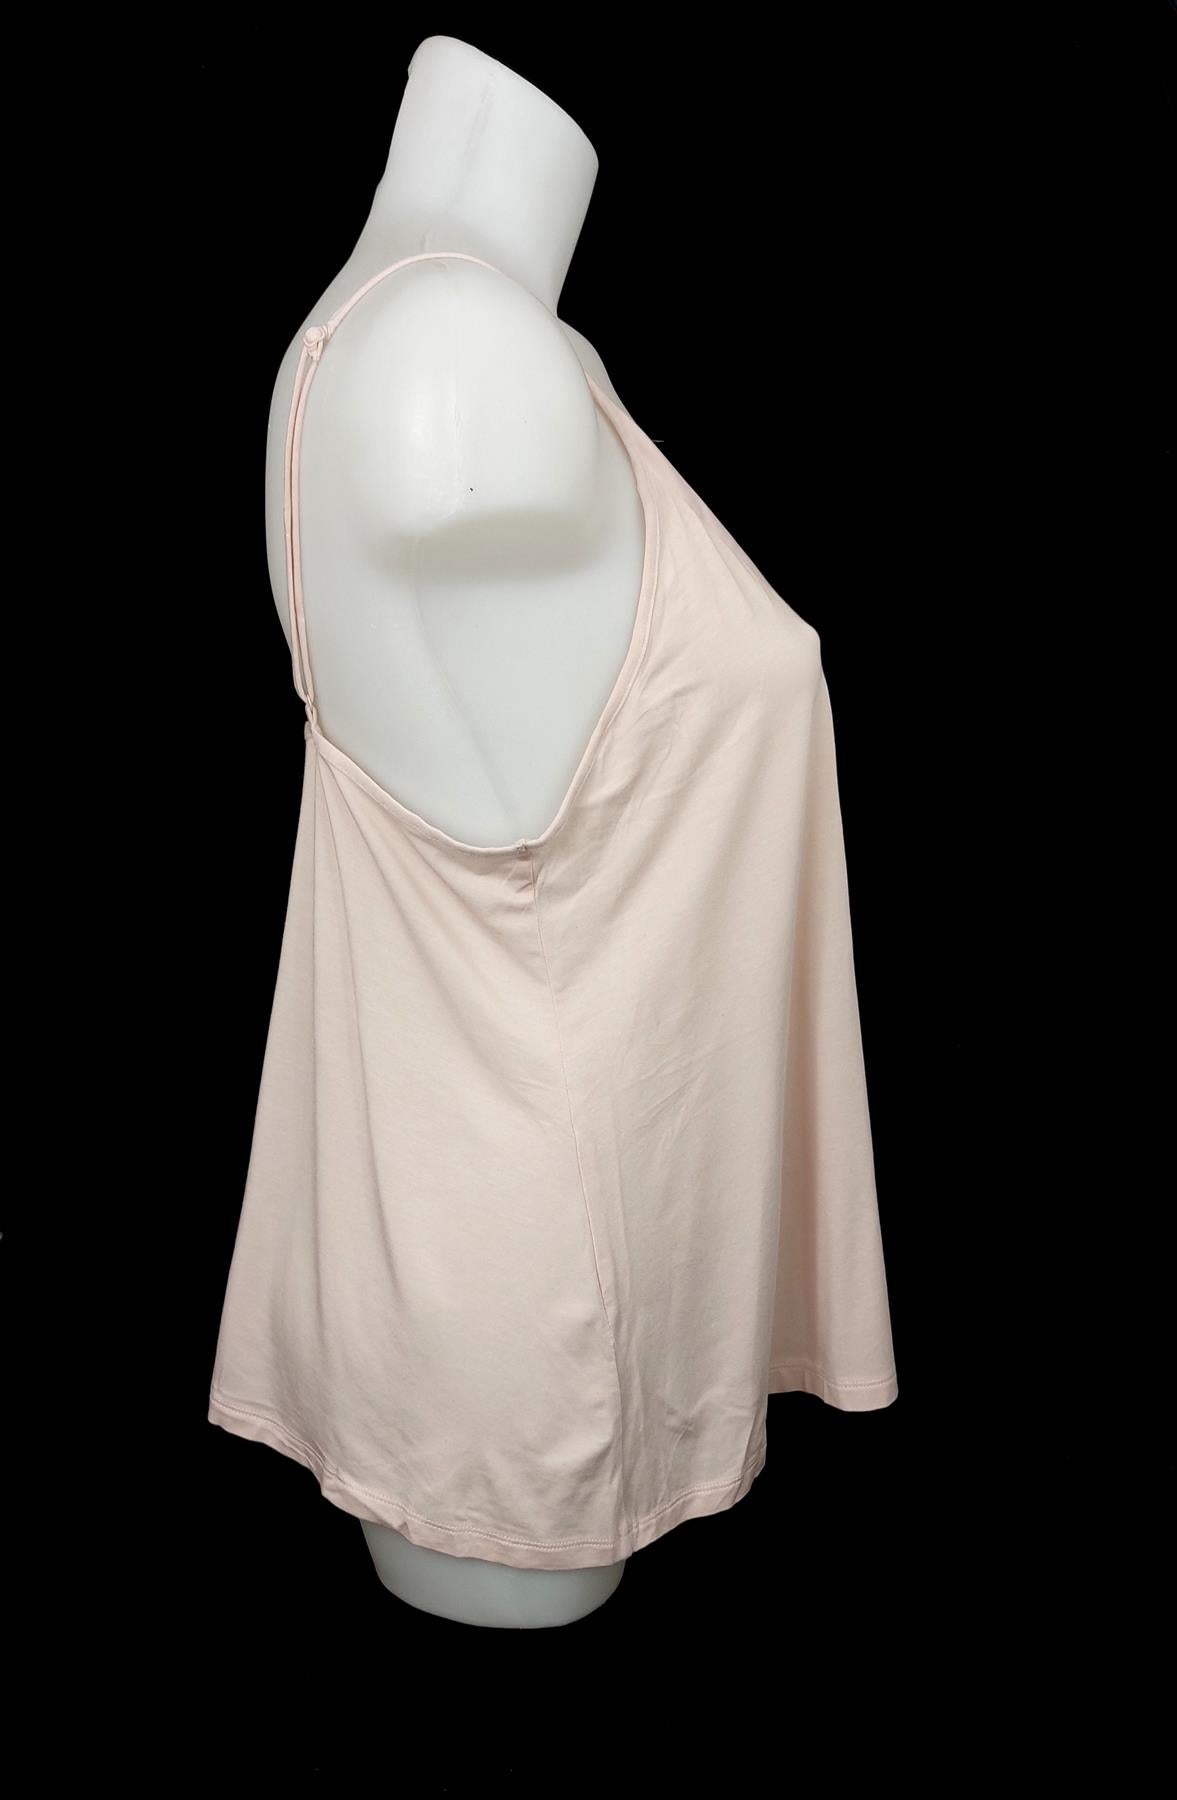 Women's Supersoft Camisole Vest Slip Summer Pyjama Top Strappy Sleepwear Brand New